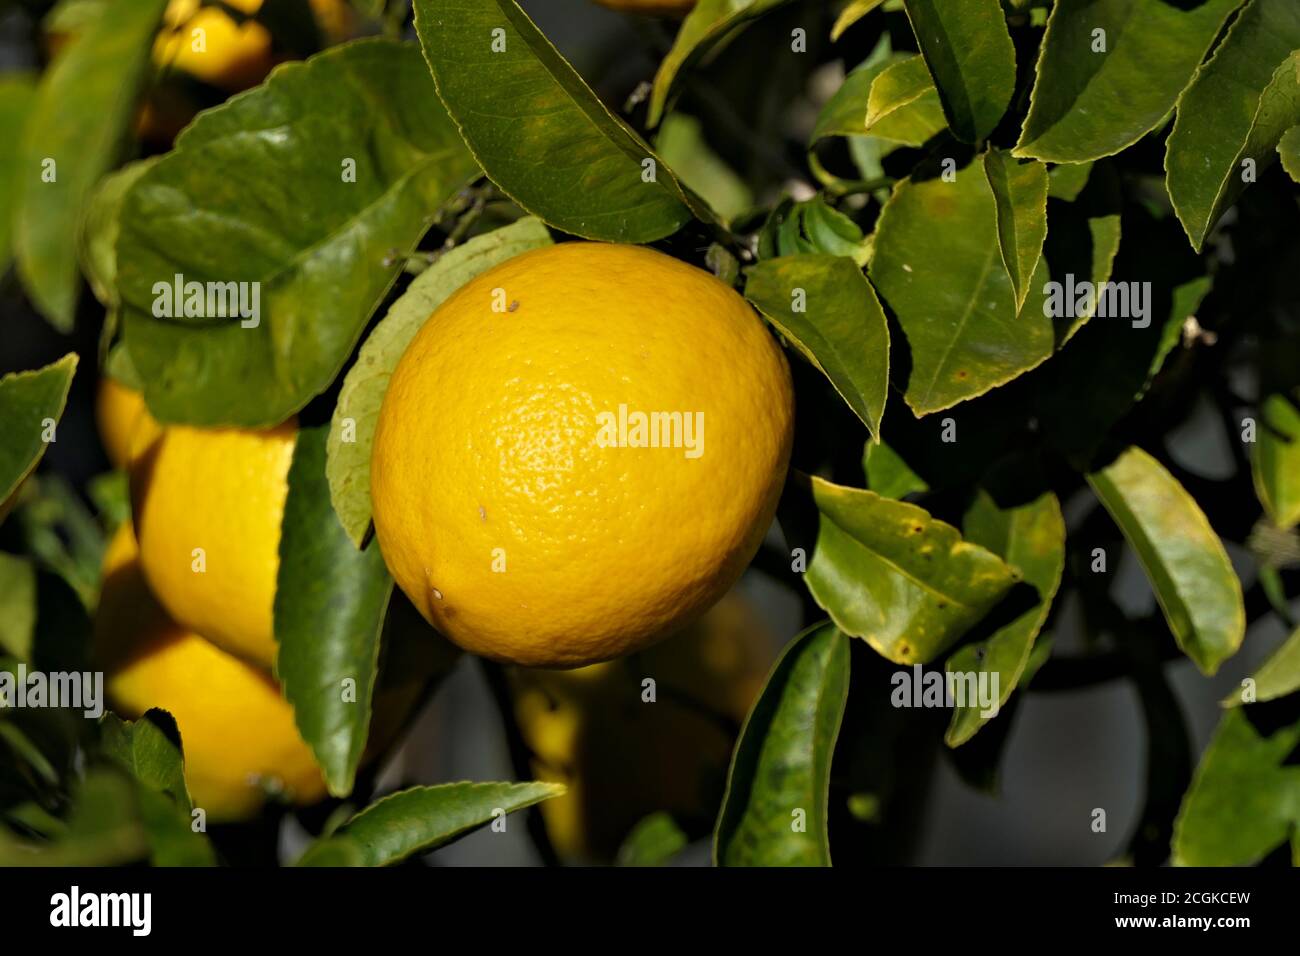 Closeup ripe sunlit lemon on a tree Stock Photo